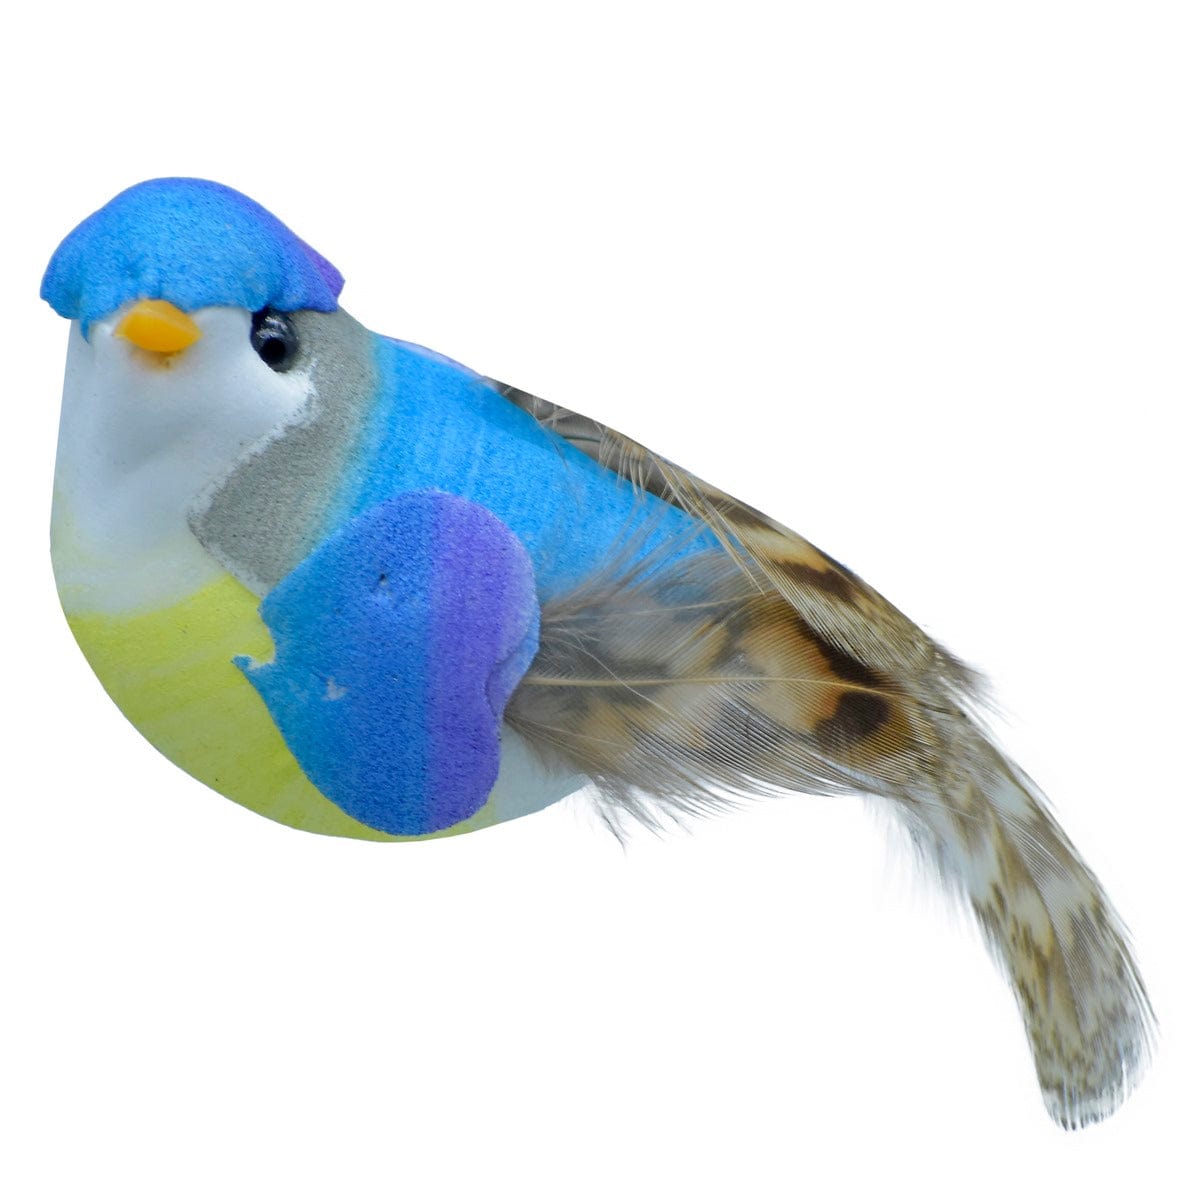 jags-mumbai Artificial Bird Craft Artificial Bird With Magnet TH10445